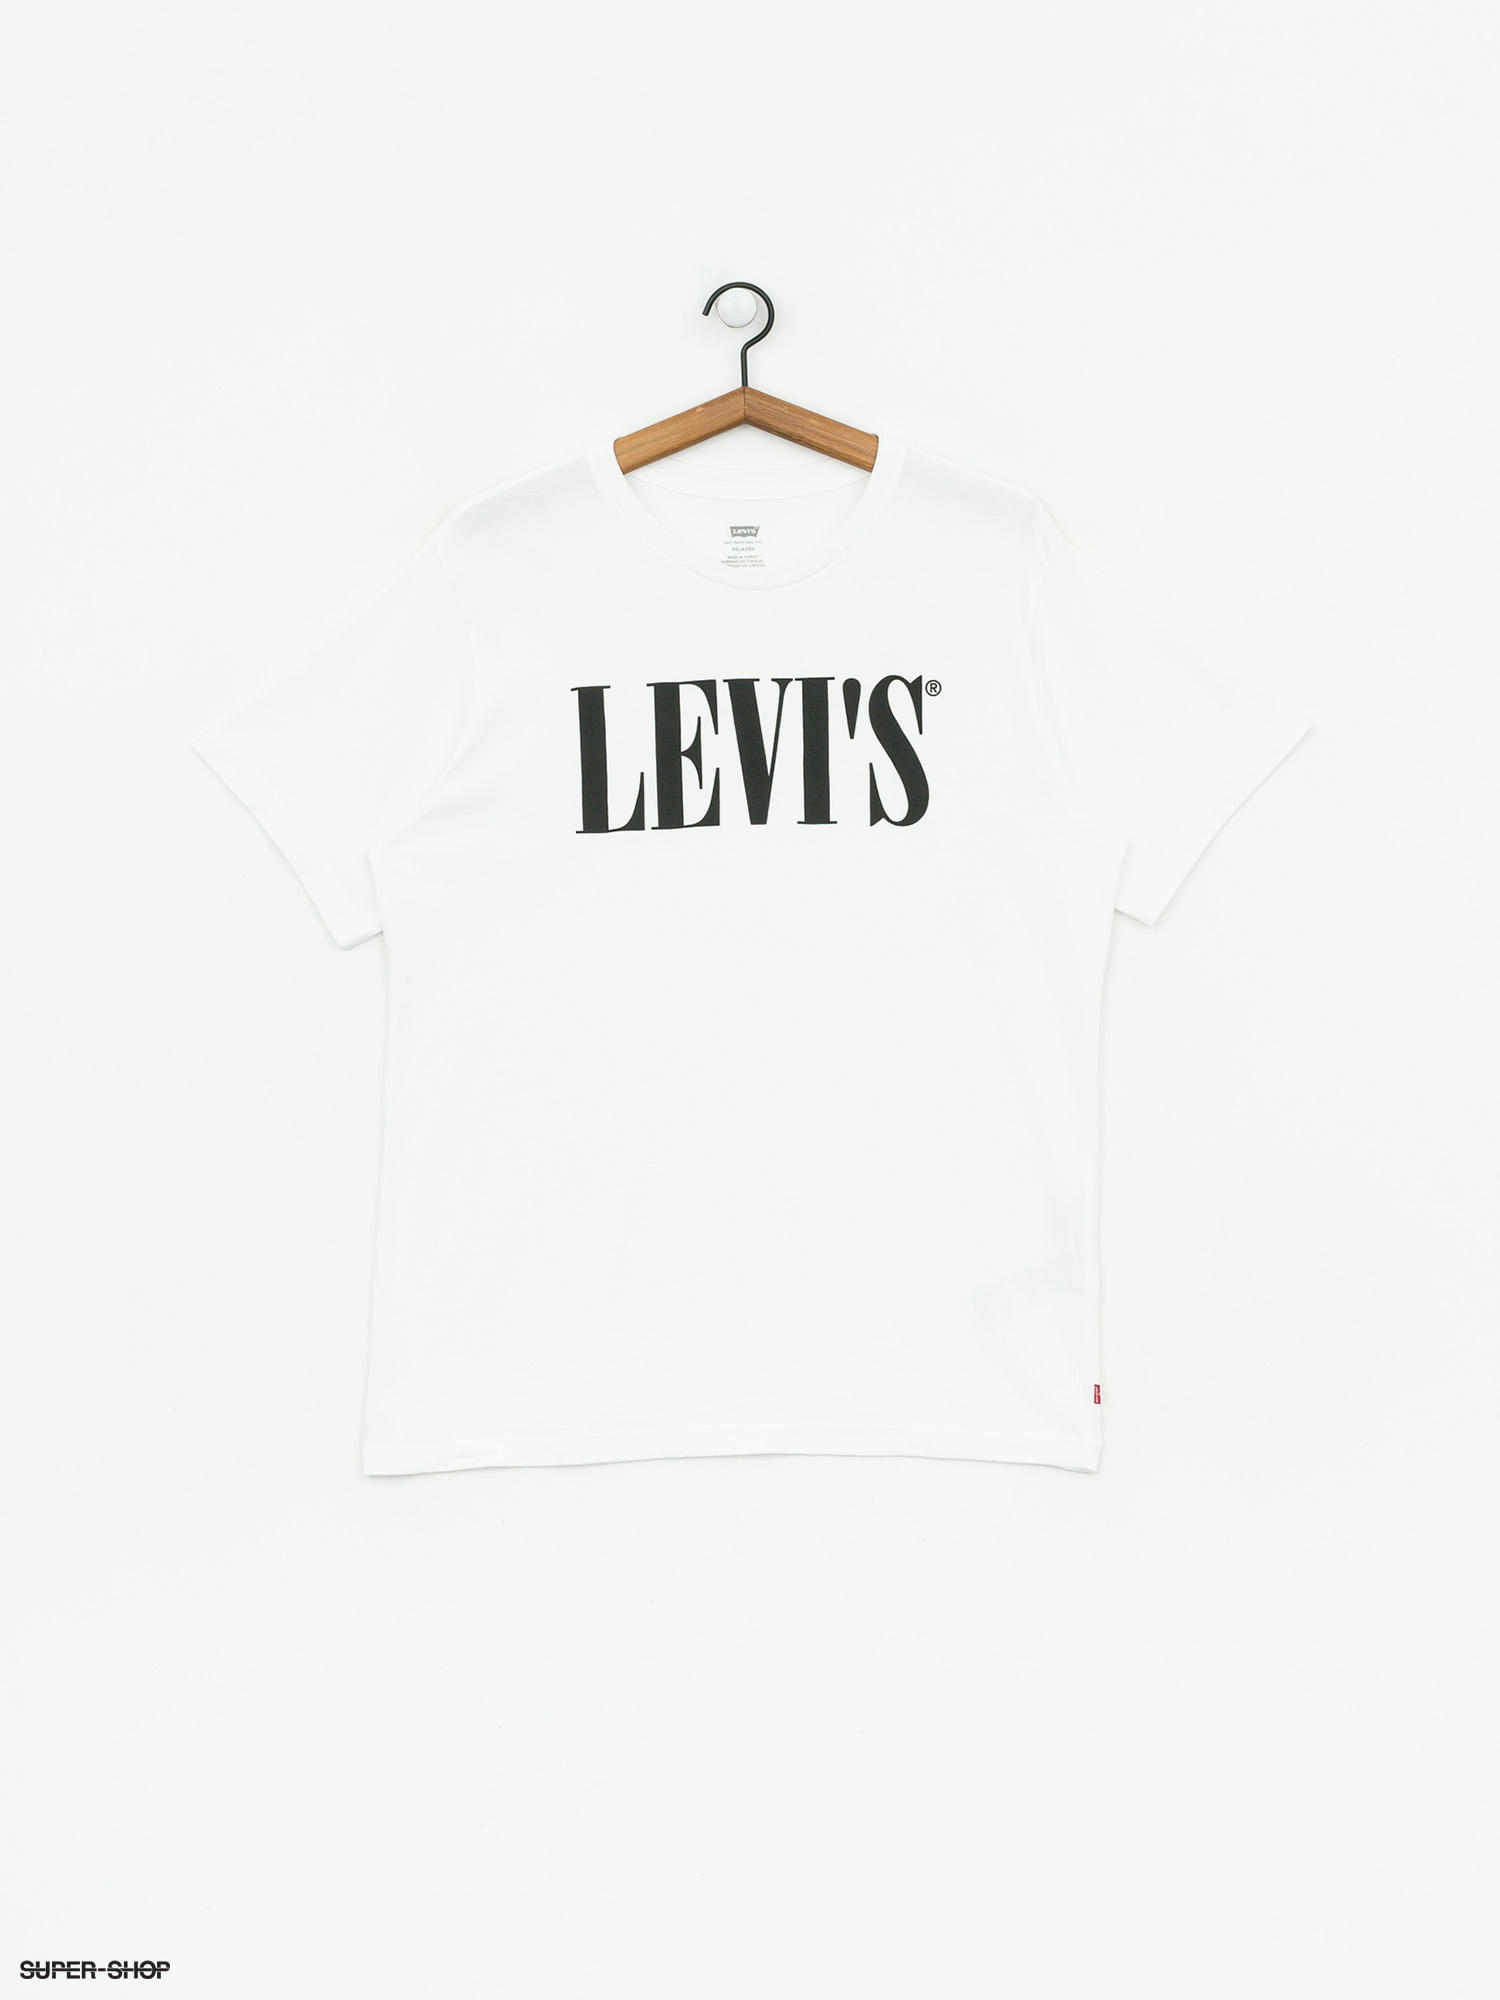 levis white crop top